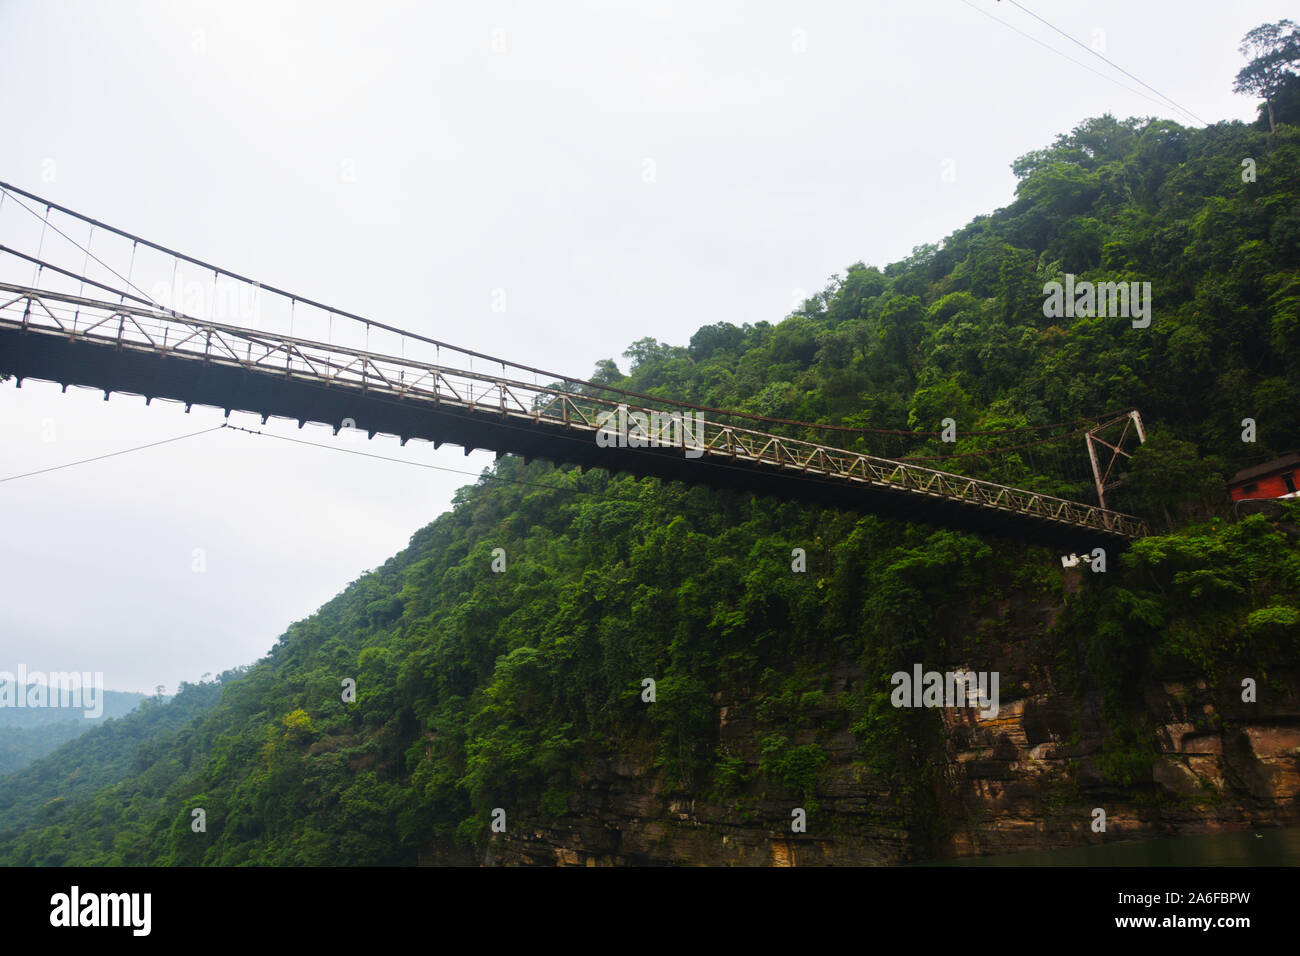 La tenture pont suspendu de la rivière dans Umngot Dawki Meghalay, Shillong, près de la frontière de l'Inde et du Bangladesh en vue d'en bas la rivière Banque D'Images